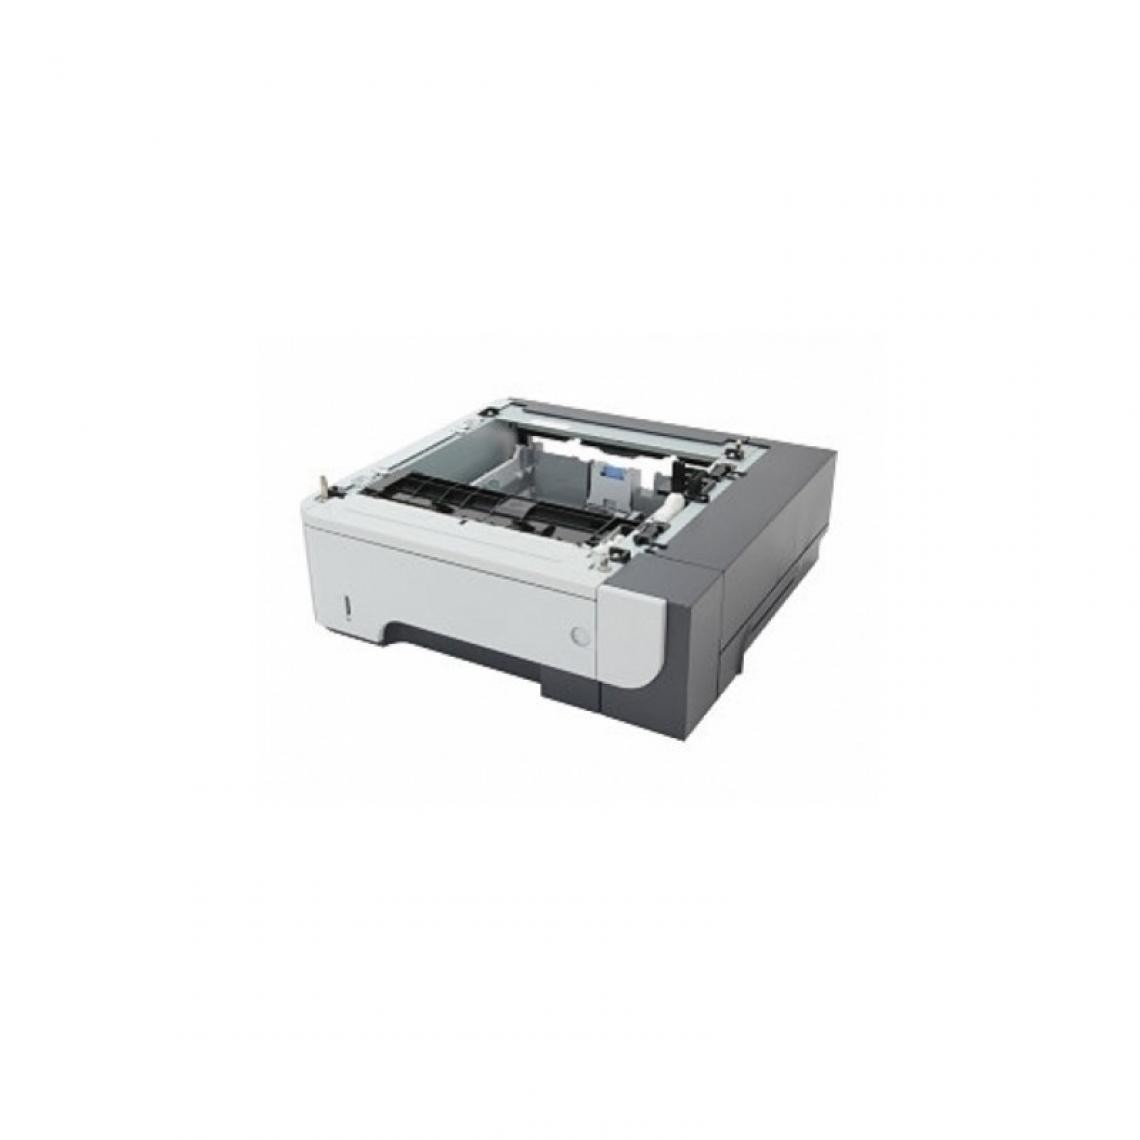 Hp - HP BAC 500 F pour Série HP laserjet 3015 - Imprimante Laser